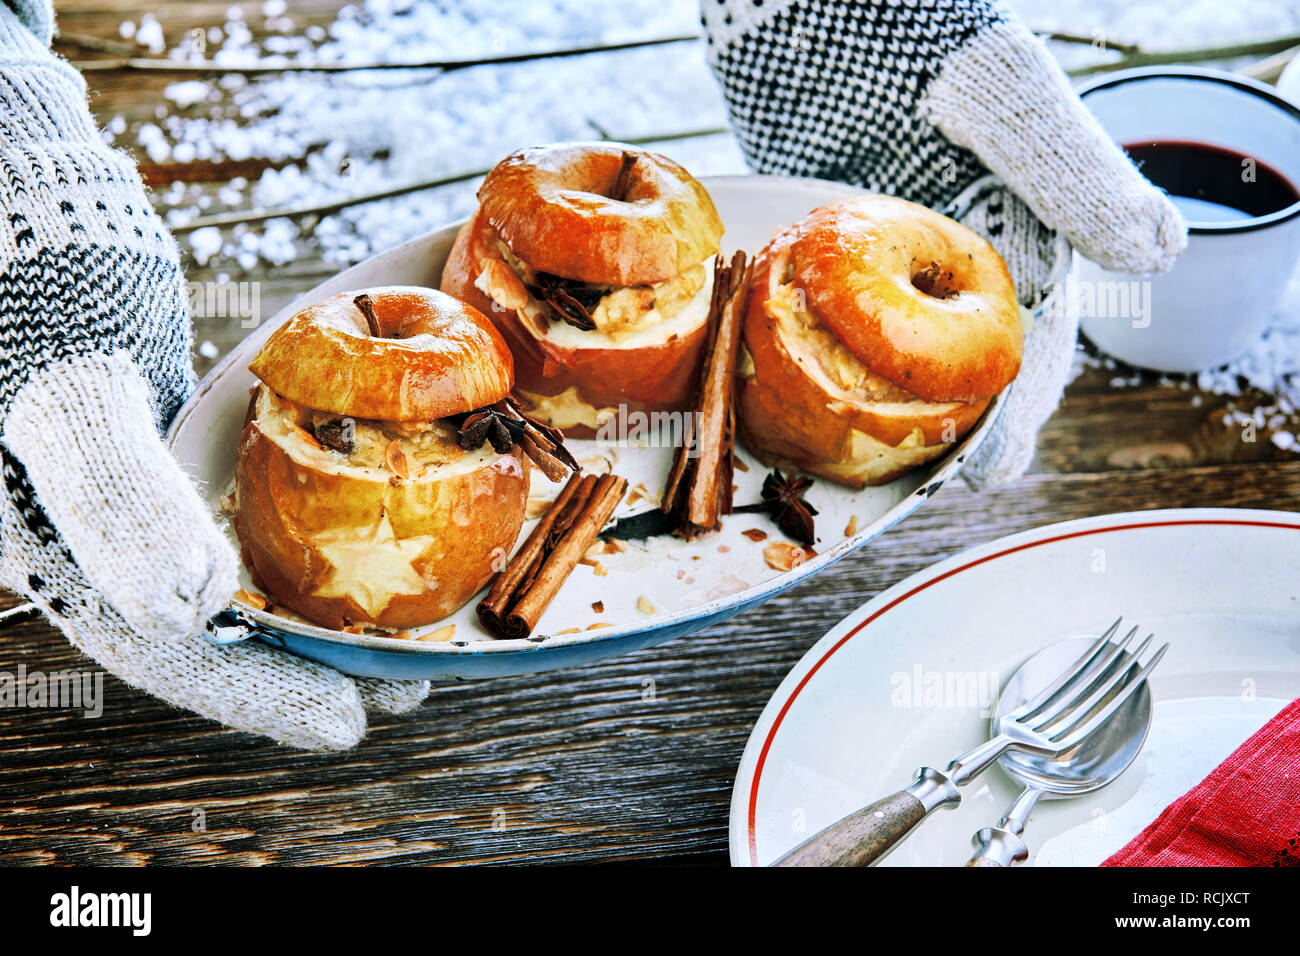 Mani guantate tenendo una lastra di cotto al forno ripiene di mele speziate con cannella sopra un tavolo nevoso a un inverno outdoor barbecue a Natale Foto Stock